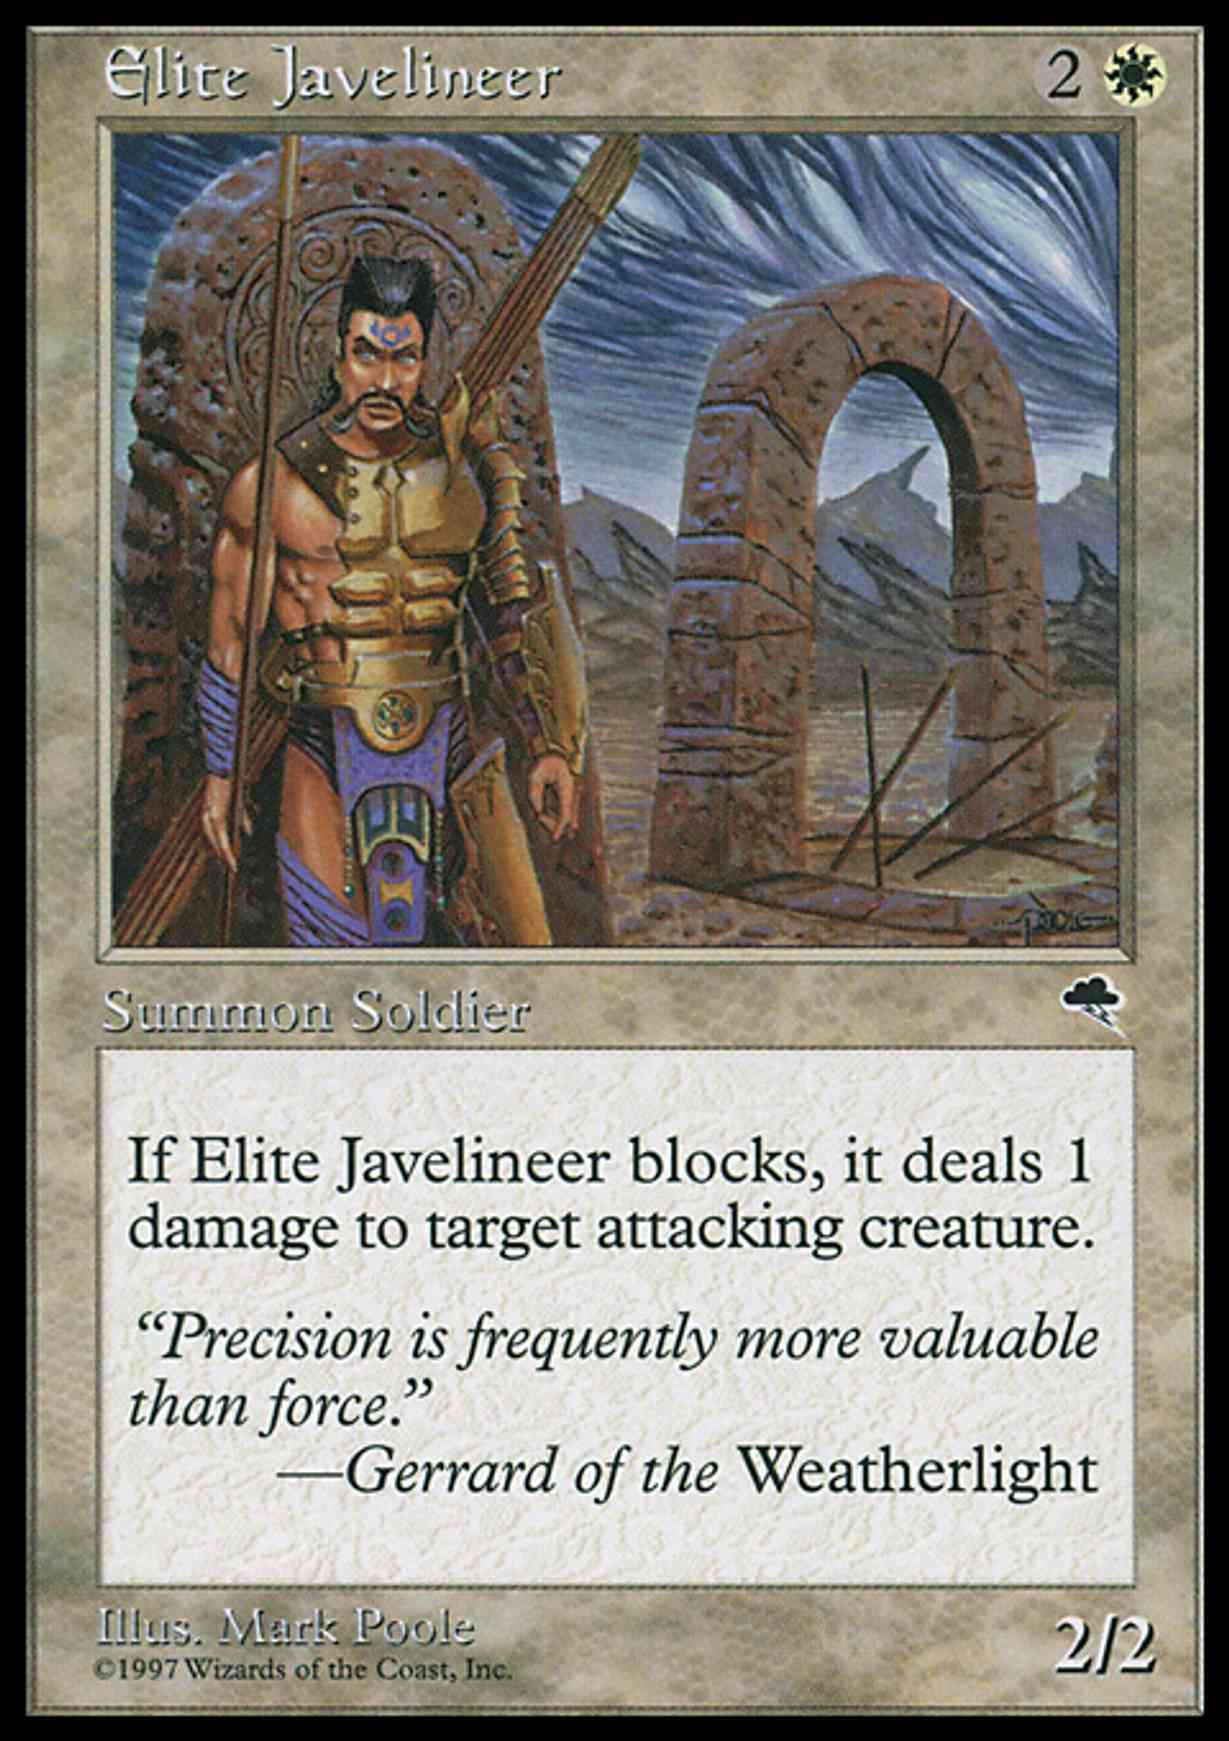 Elite Javelineer magic card front